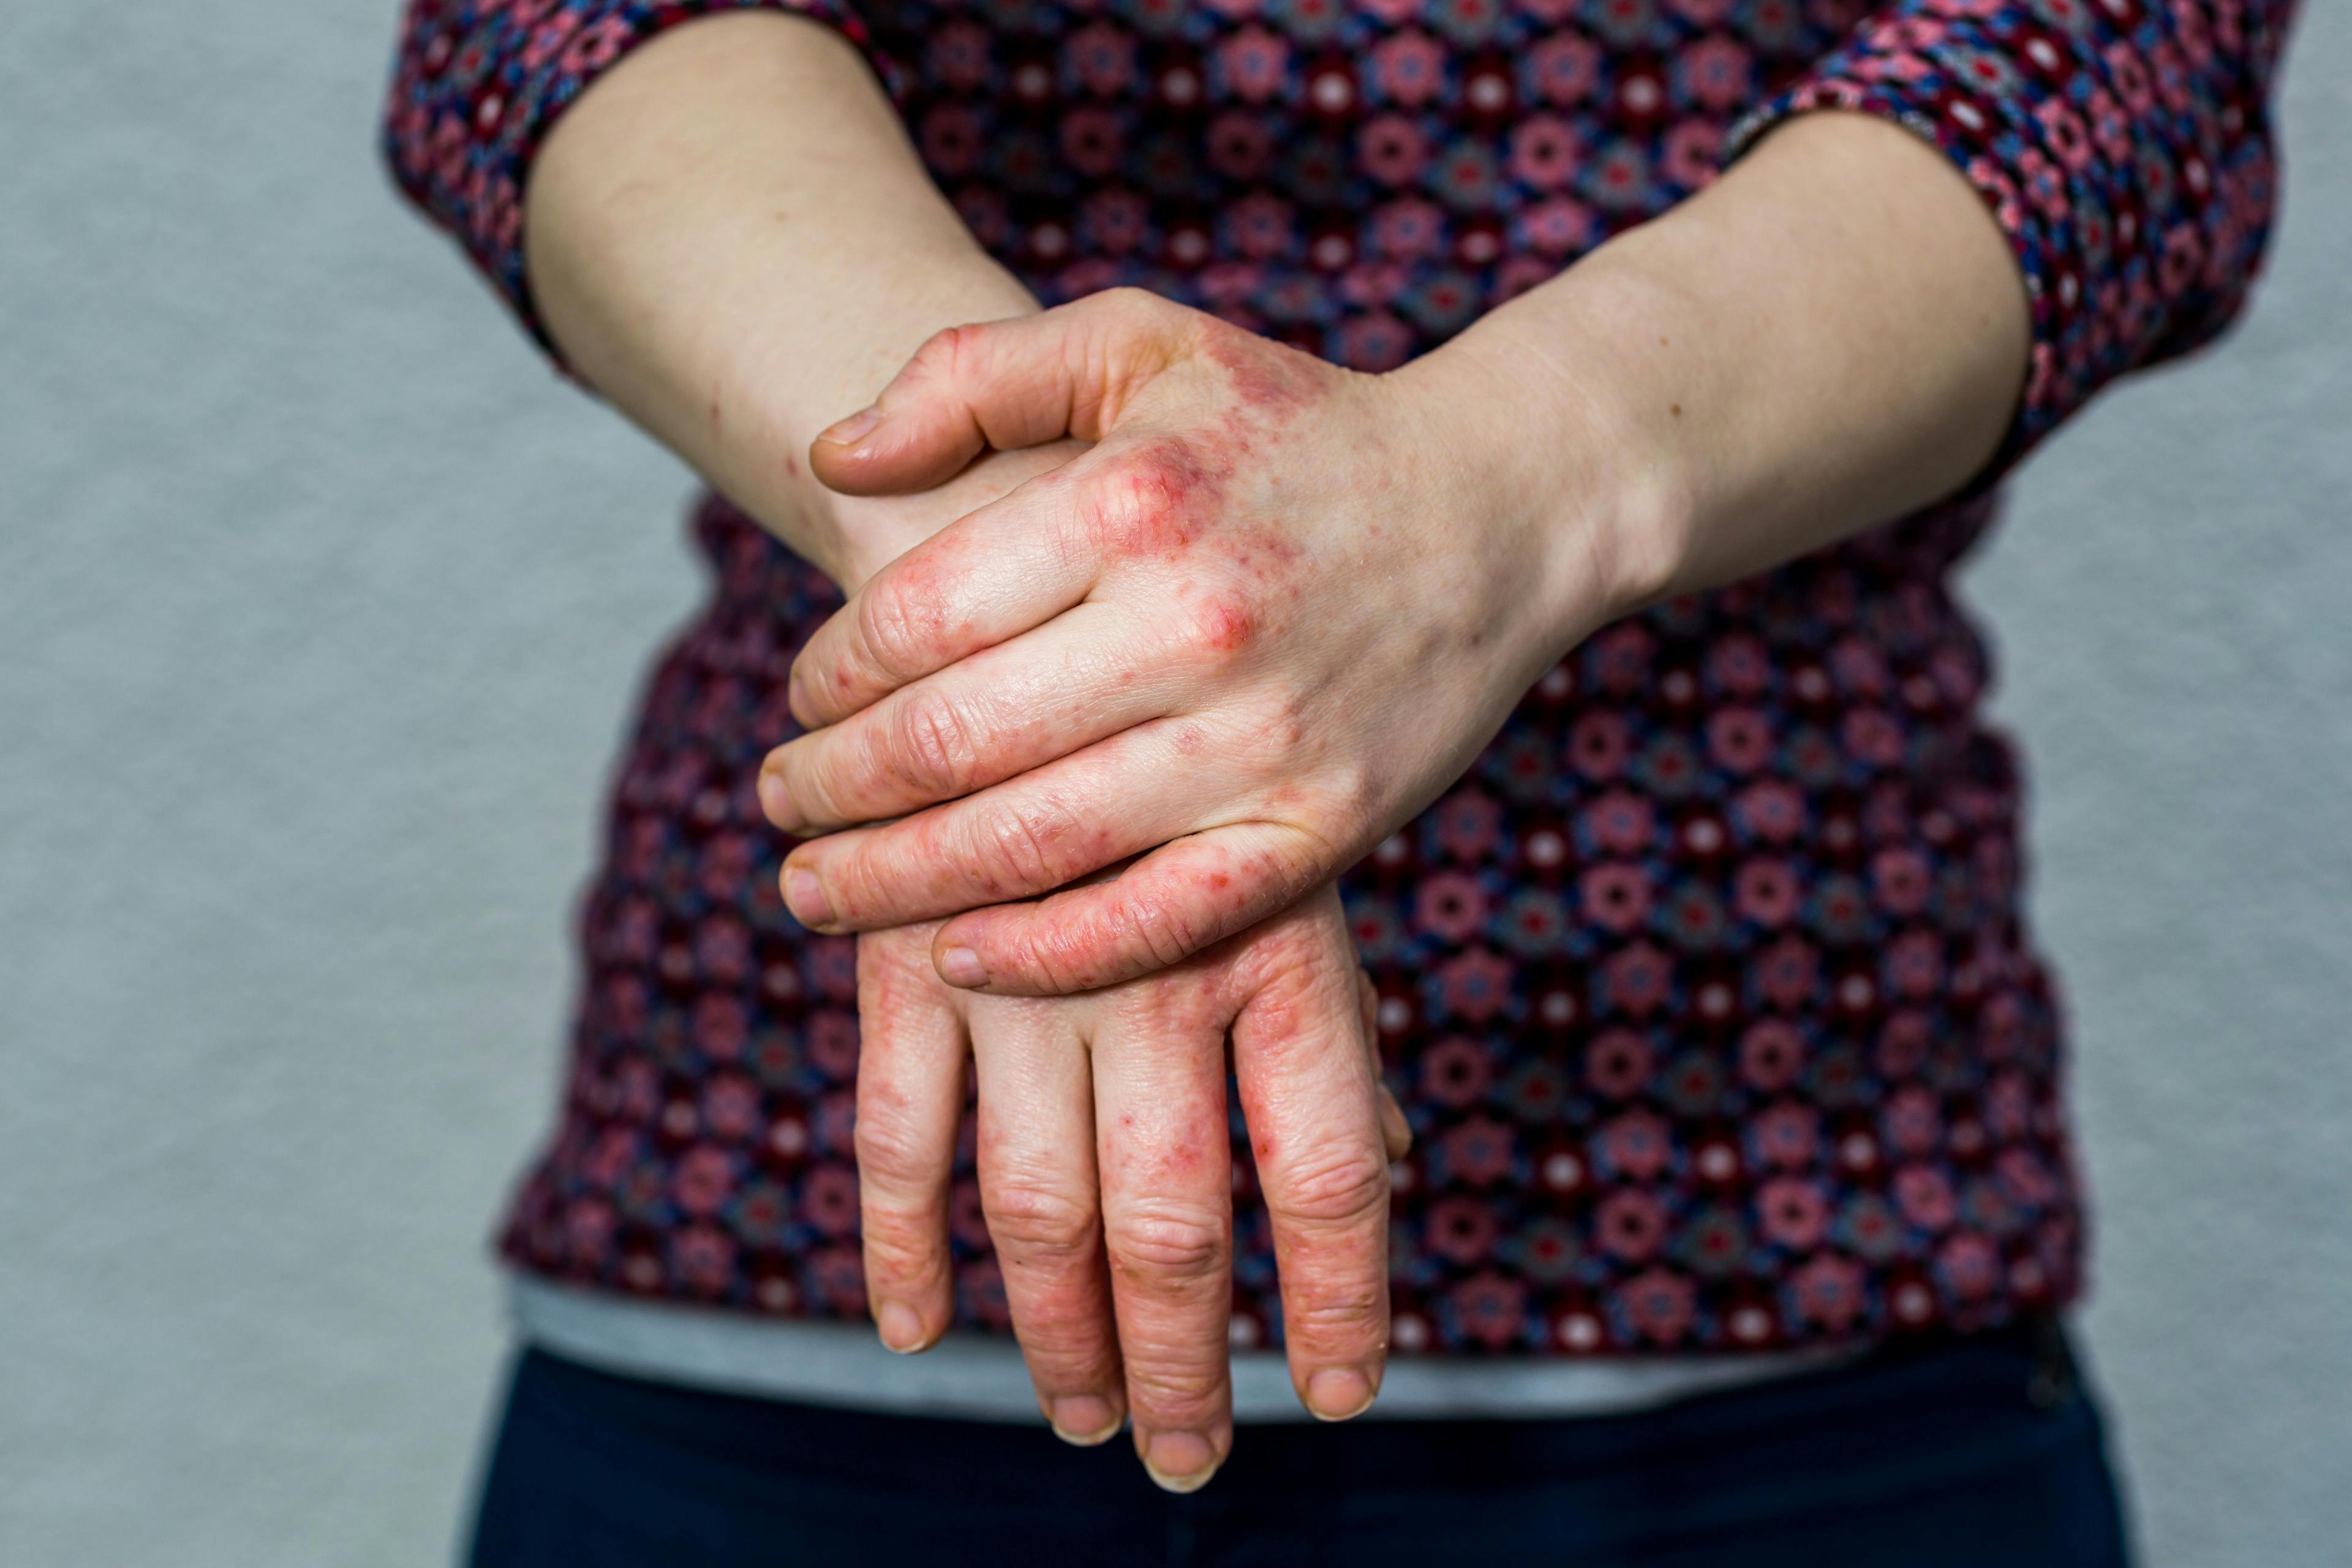 FDA grants delgocitinib fast track designation for chronic hand eczema